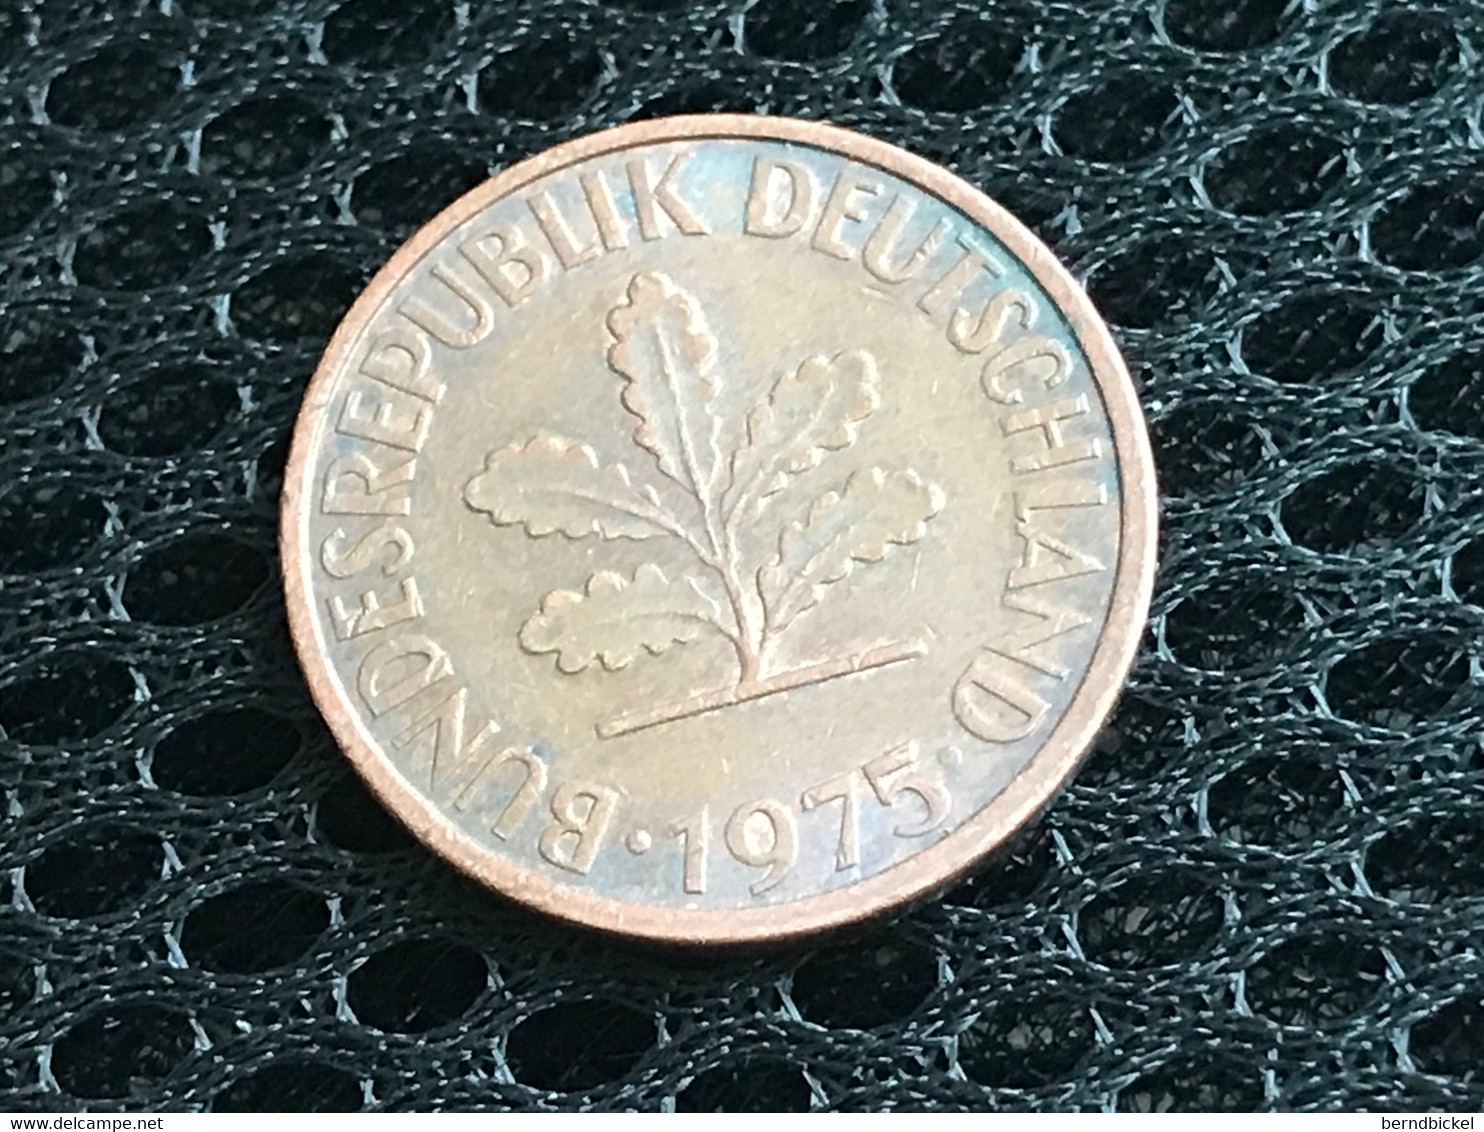 Münze Münzen Umlaufmünze Deutschland BRD 2 Pfennig 1975 Münzzeichen F - Barbades